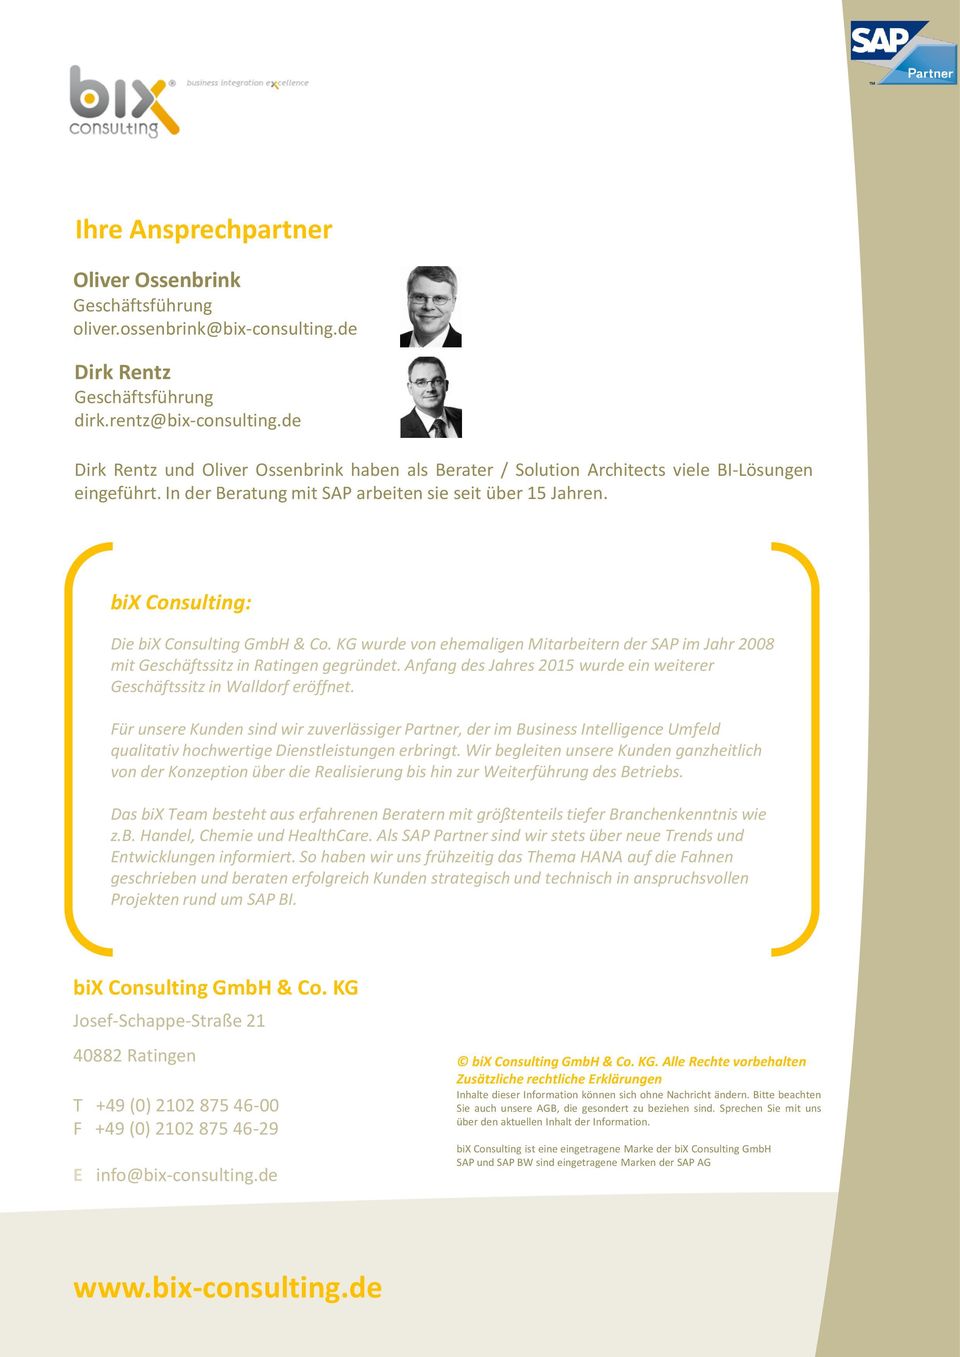 bix Consulting: Die bix Consulting GmbH & Co. KG wurde von ehemaligen Mitarbeitern der SAP im Jahr 2008 mit Geschäftssitz in Ratingen gegründet.